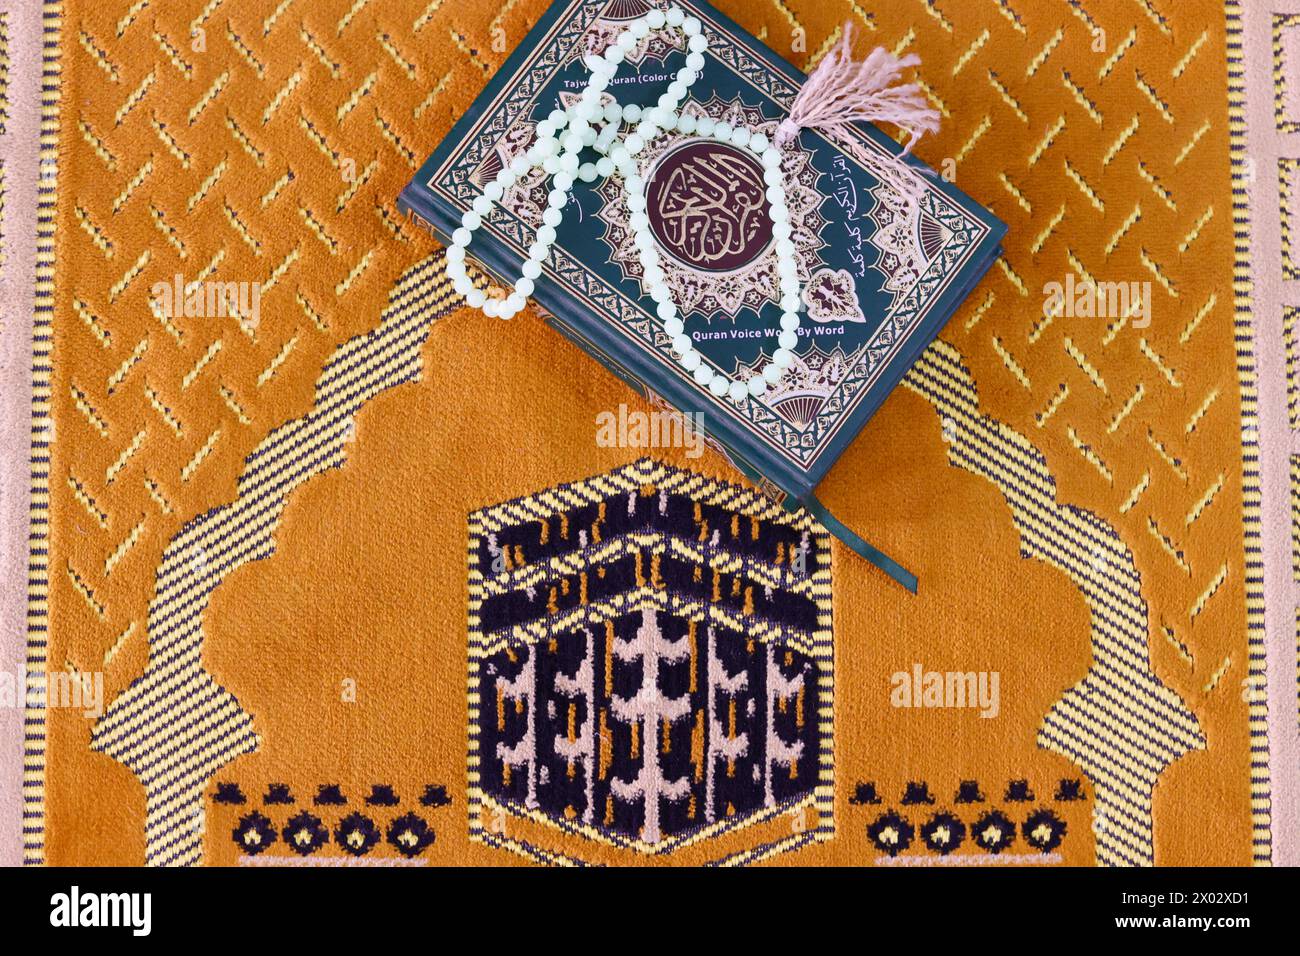 Coran et perles de prière musulmanes sur tapis de prière islamique avec la Kaaba, symbole de l'Islam, Chau Doc, Vietnam, Indochine, Asie du Sud-est, Asie Banque D'Images